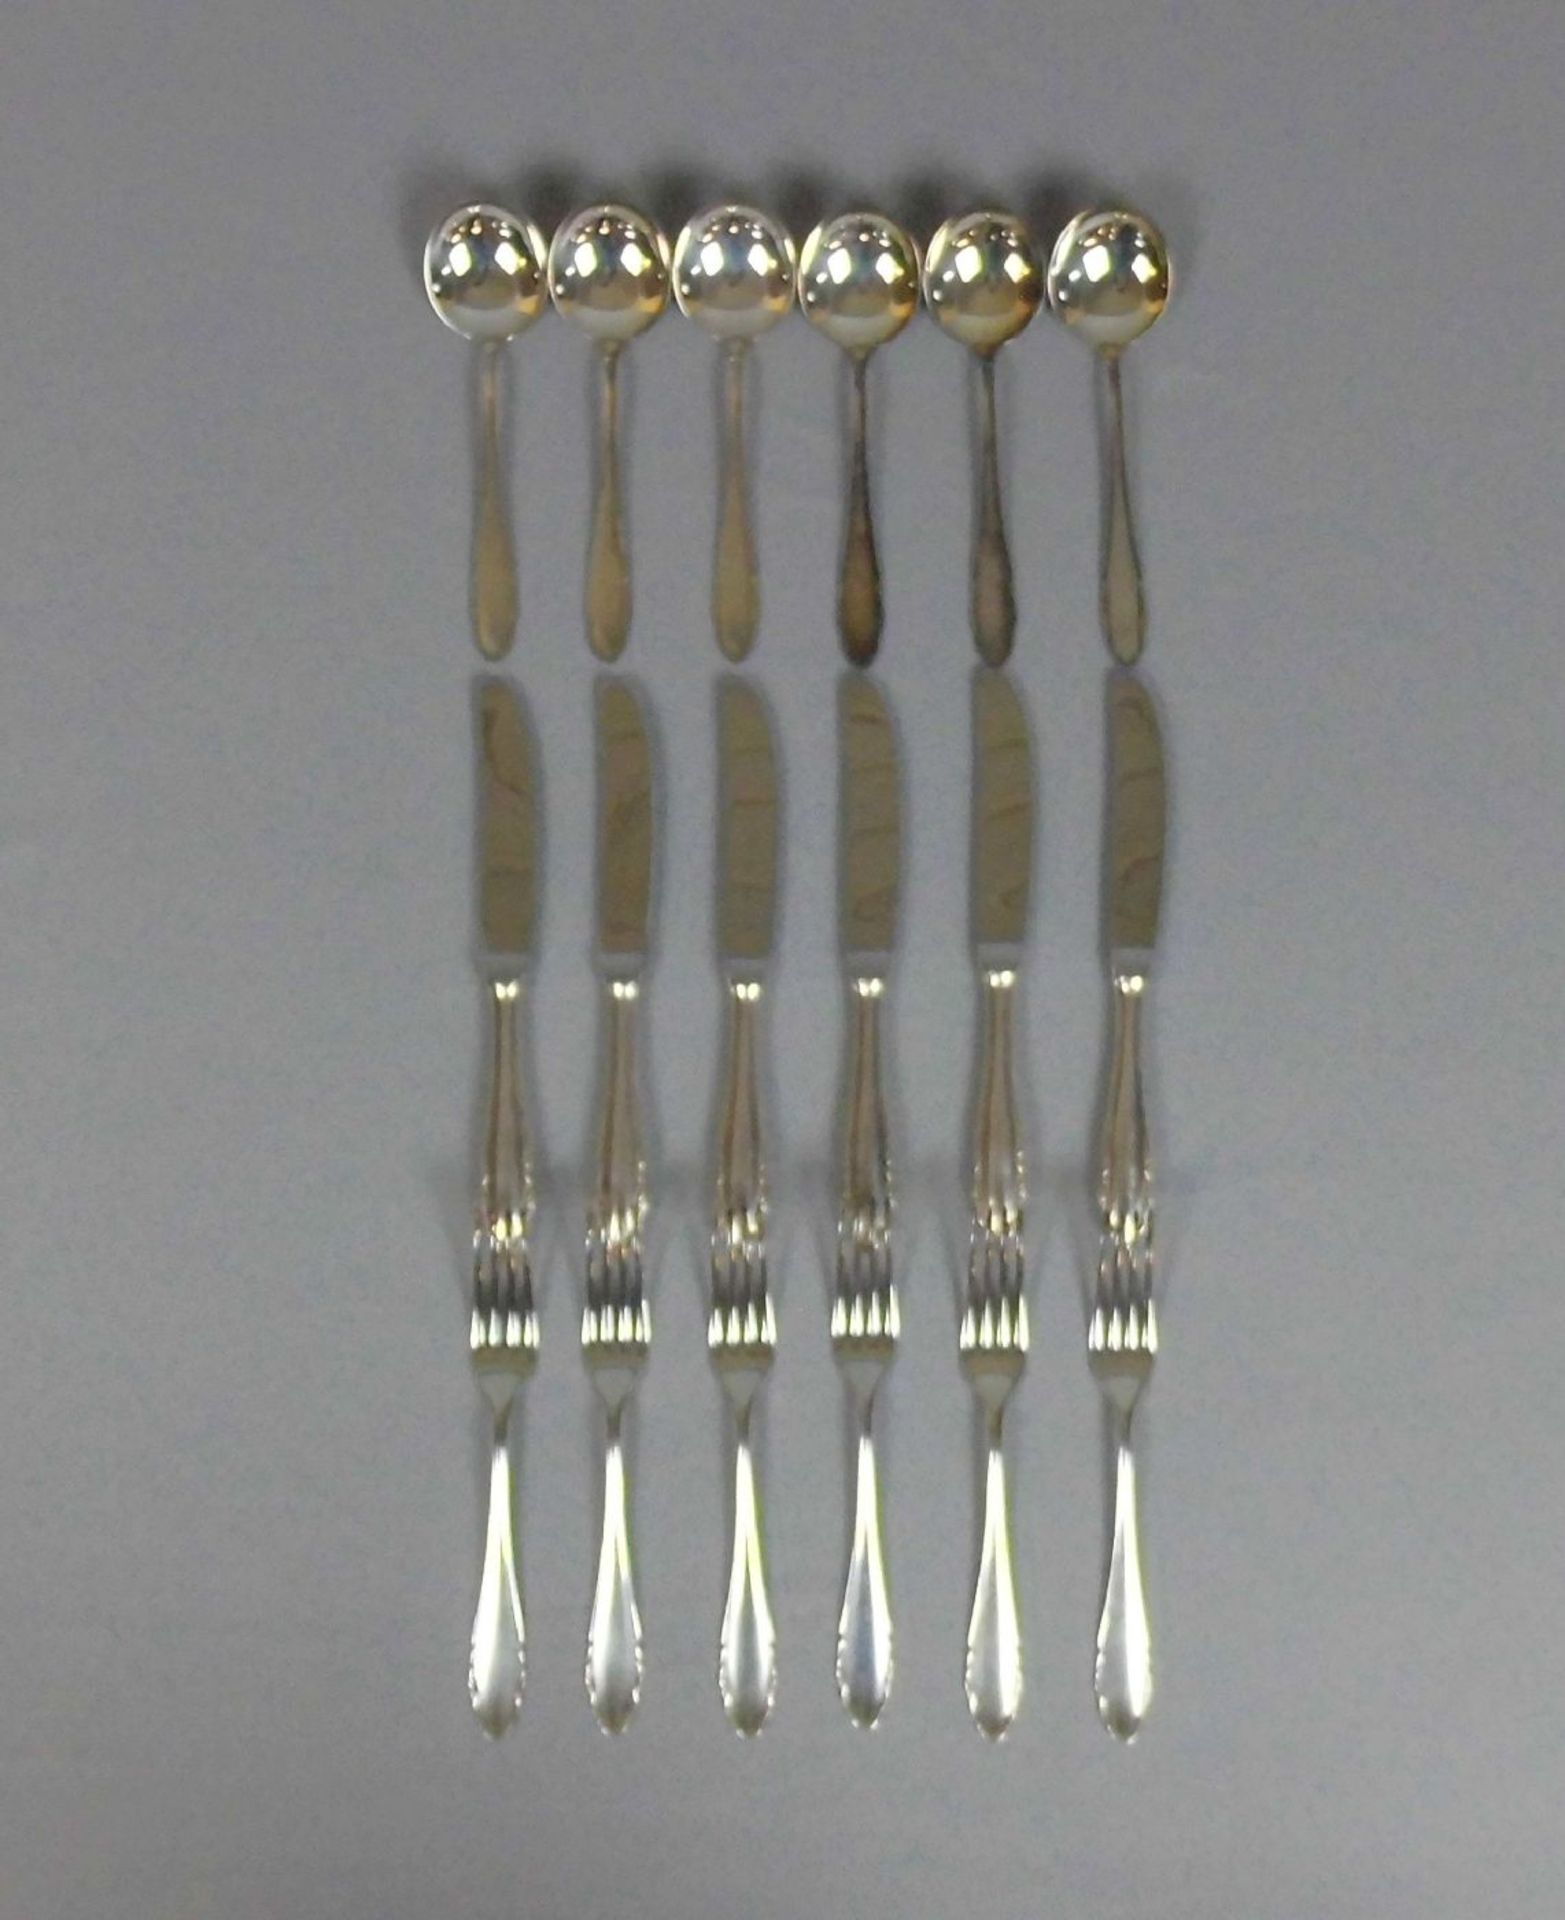 WMF - BESTECK / silver cutlery, 800er Silber (518 g, ohne Messer gewogen). WMF - Württembergische